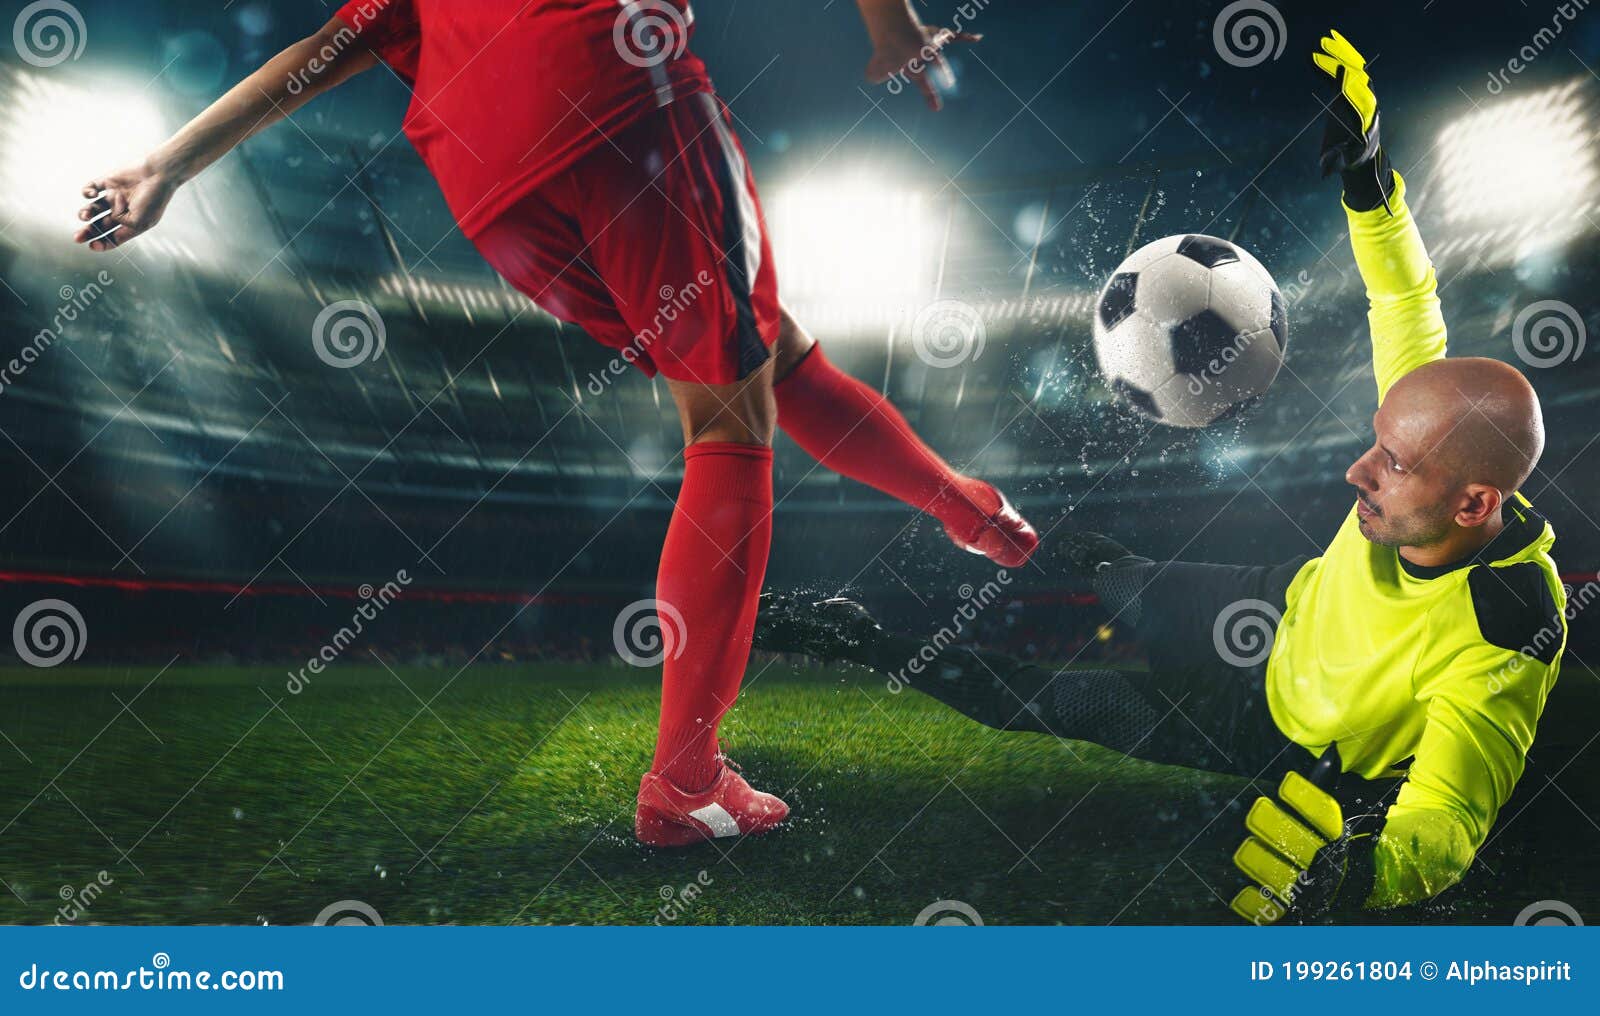 Arquero Fútbol Con Uniforme Fluorescente Contraponiéndose Al Atacante Uniforme Rojo Foto de archivo de encargado, salto: 199261804